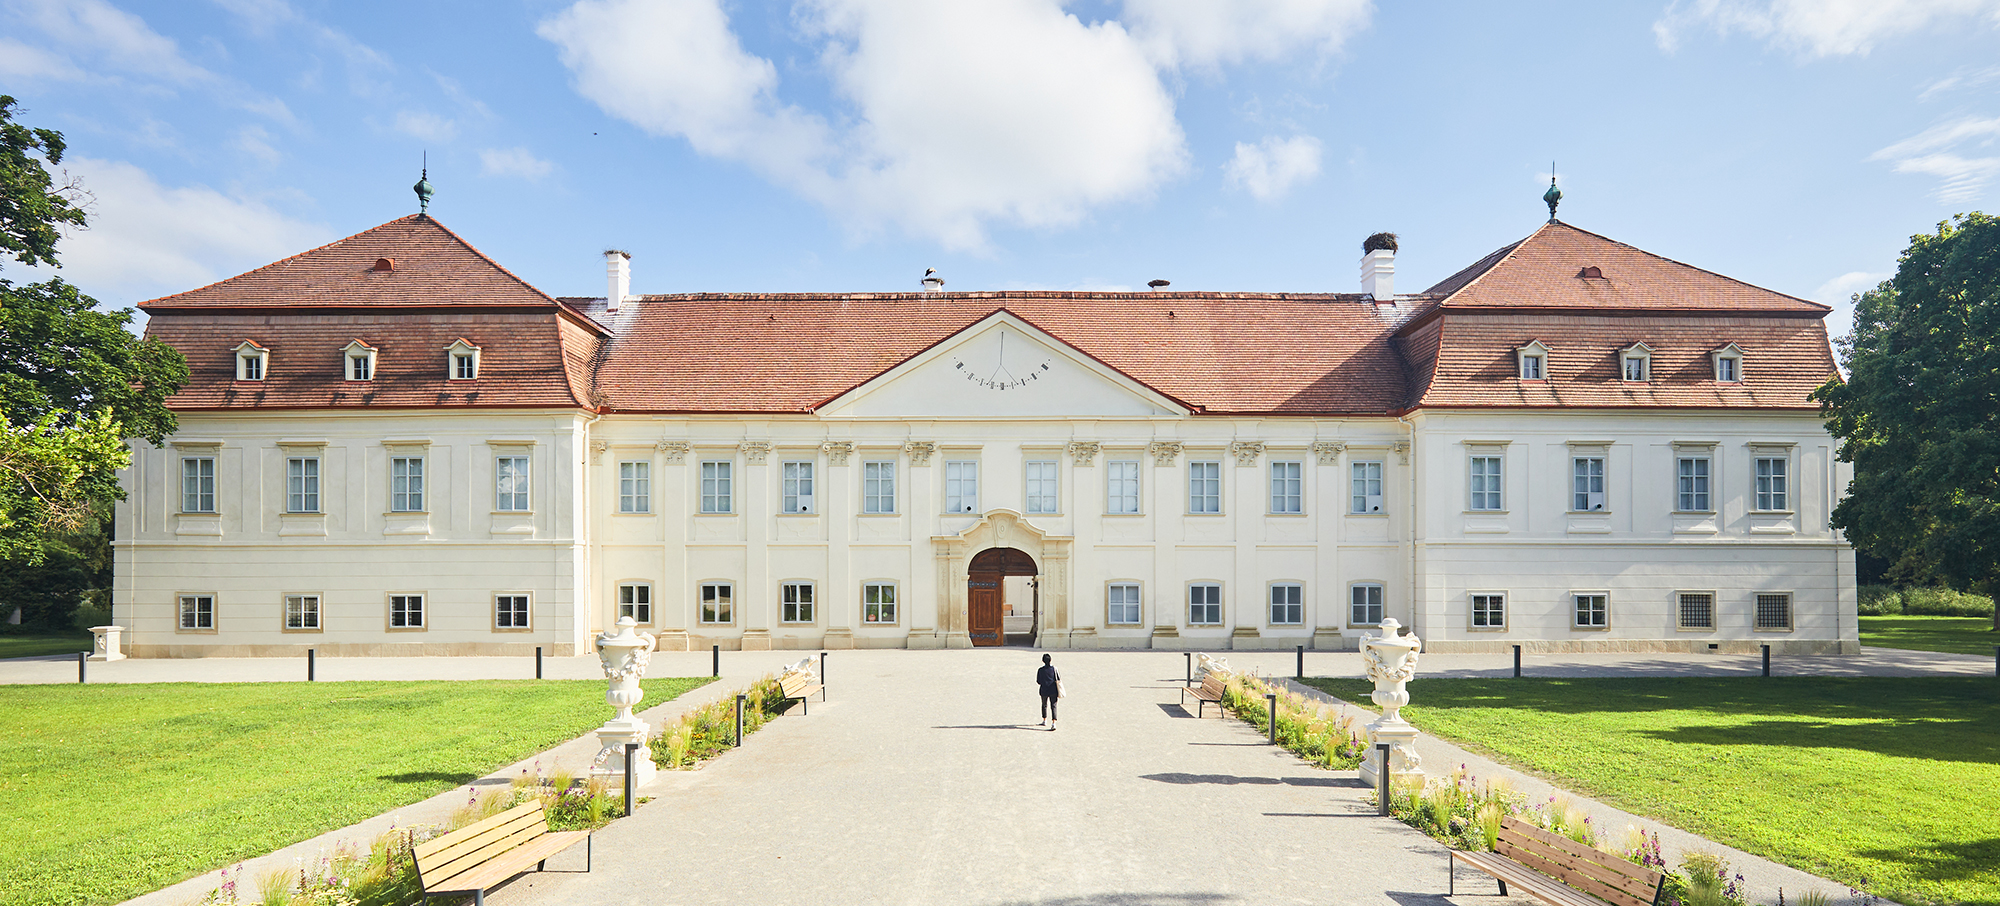 Ausstellungsstandort: Schloss Marchegg im Marchfeld. © Rupert Pessl